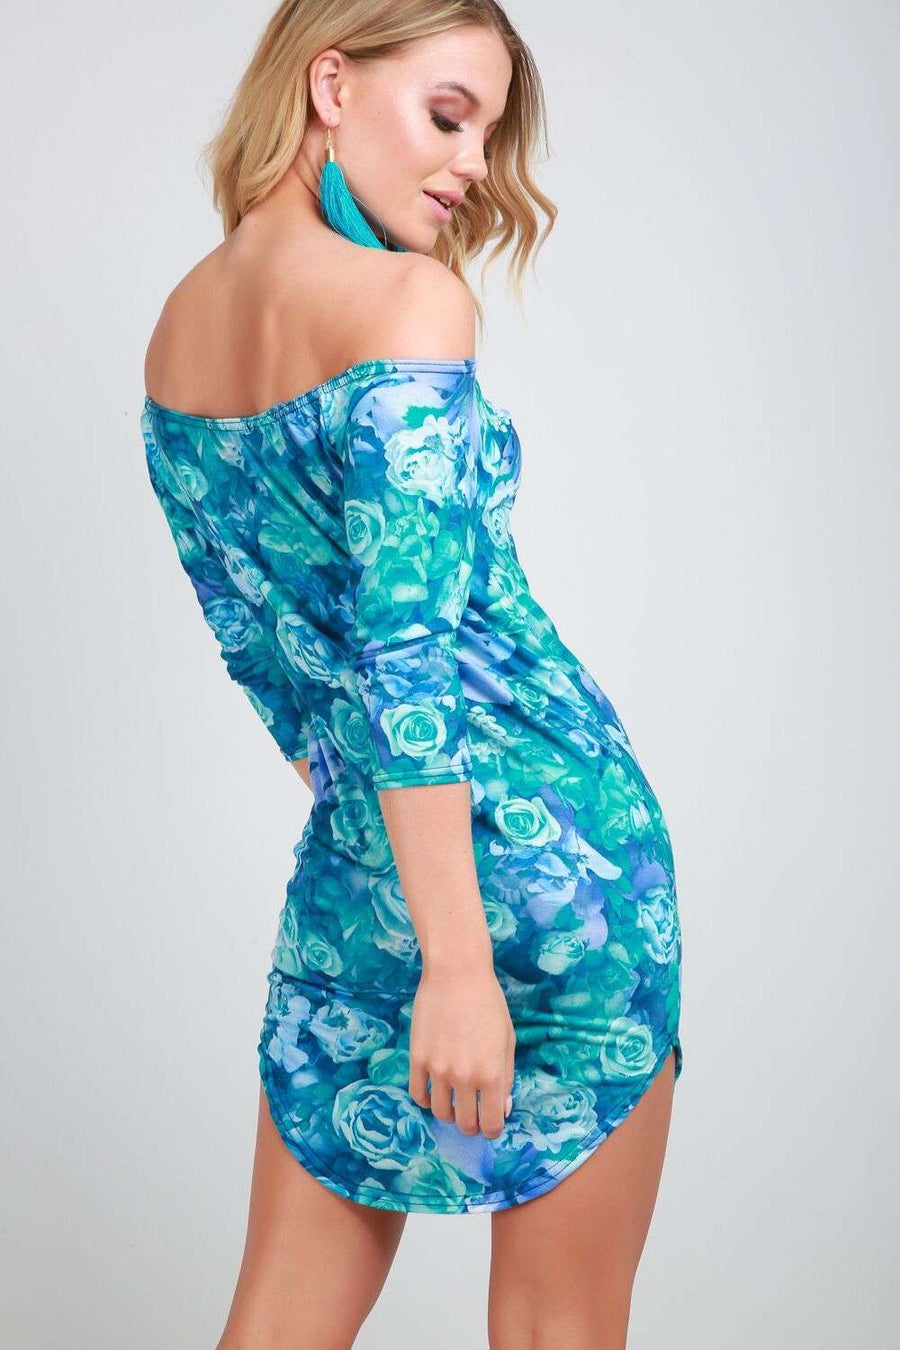 Lexi Strapless Floral Print Mini Bodycon Dress - bejealous-com